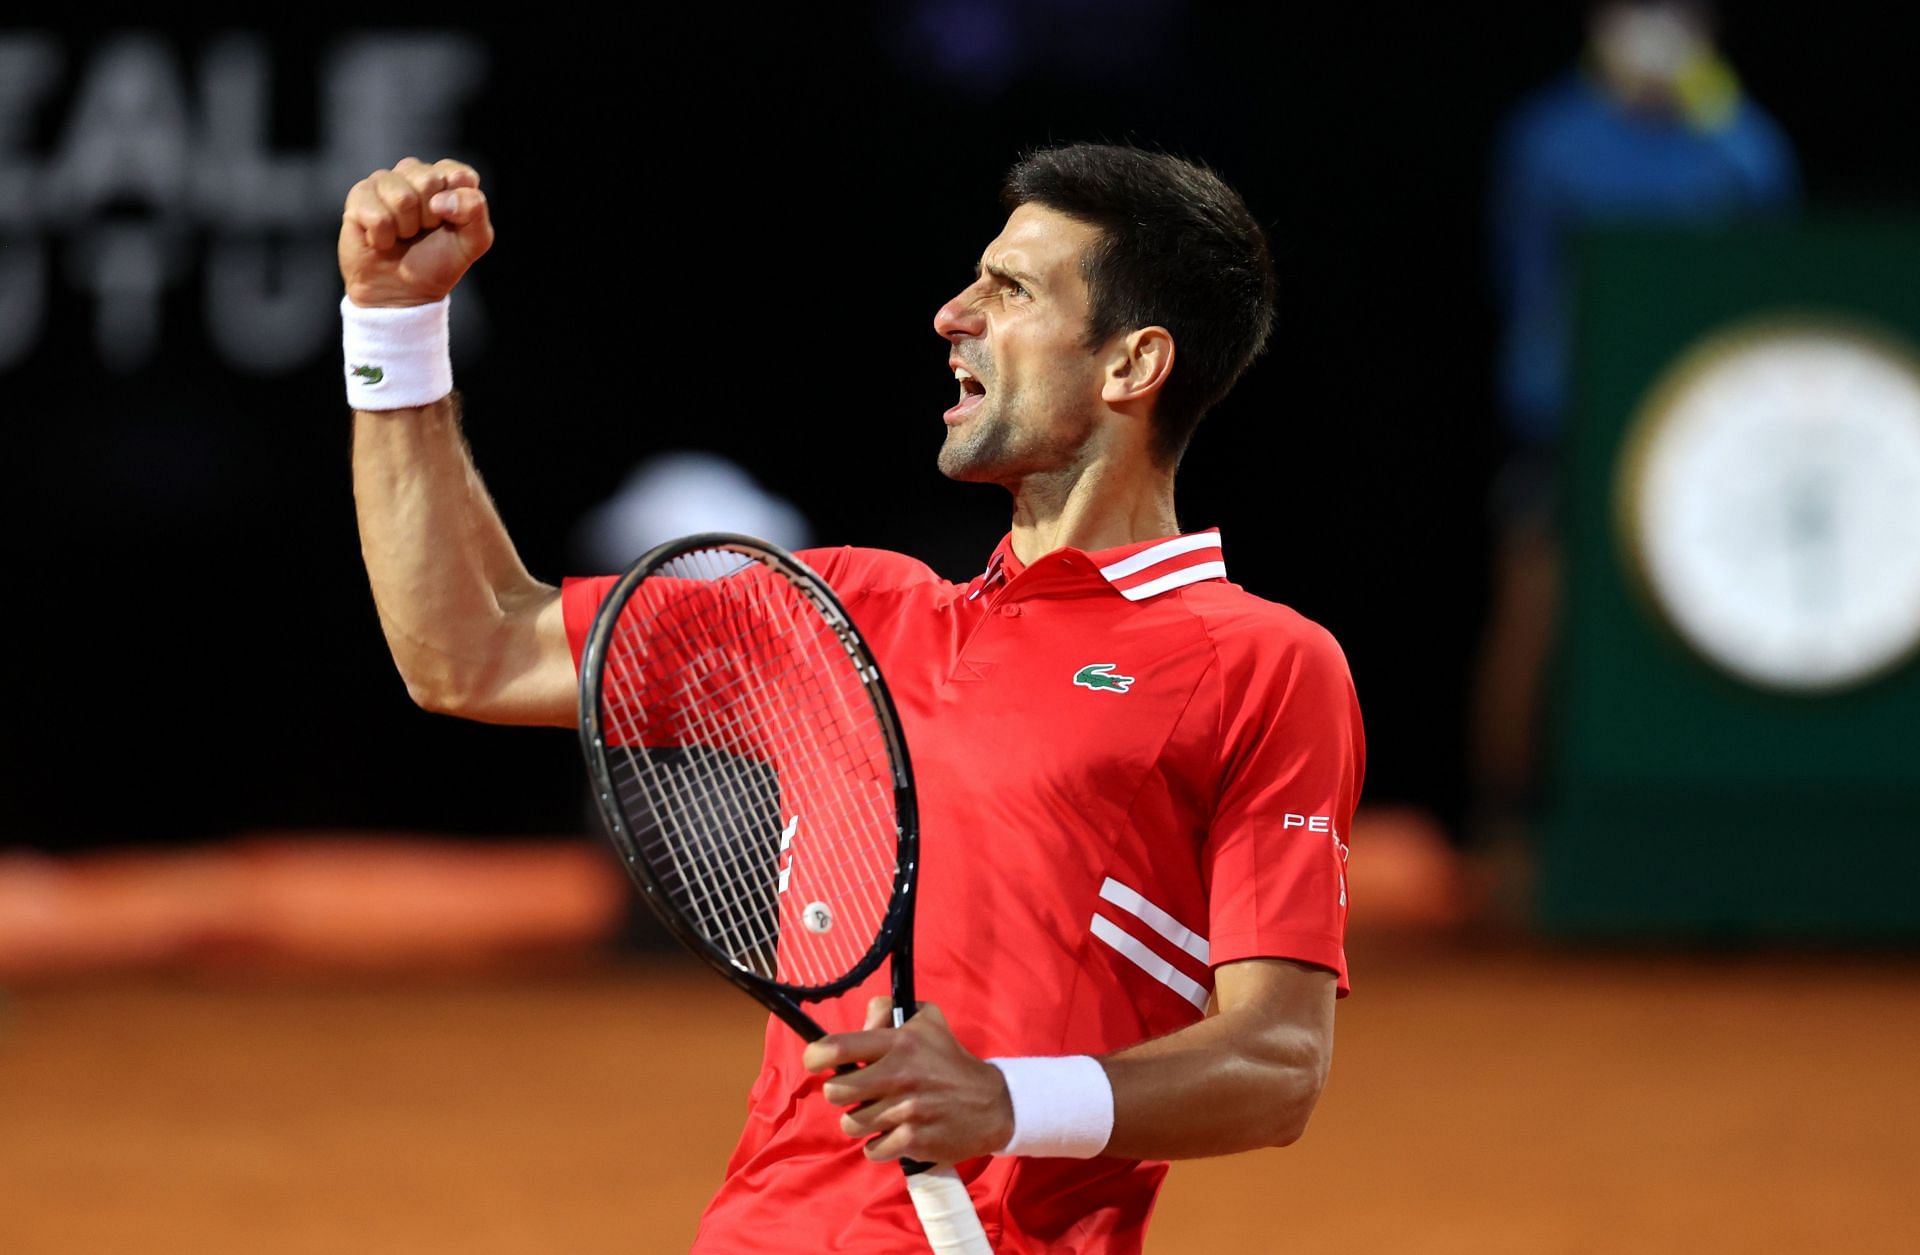 Novak Djokovic celebrates during the 2021 Italian Open in Rome